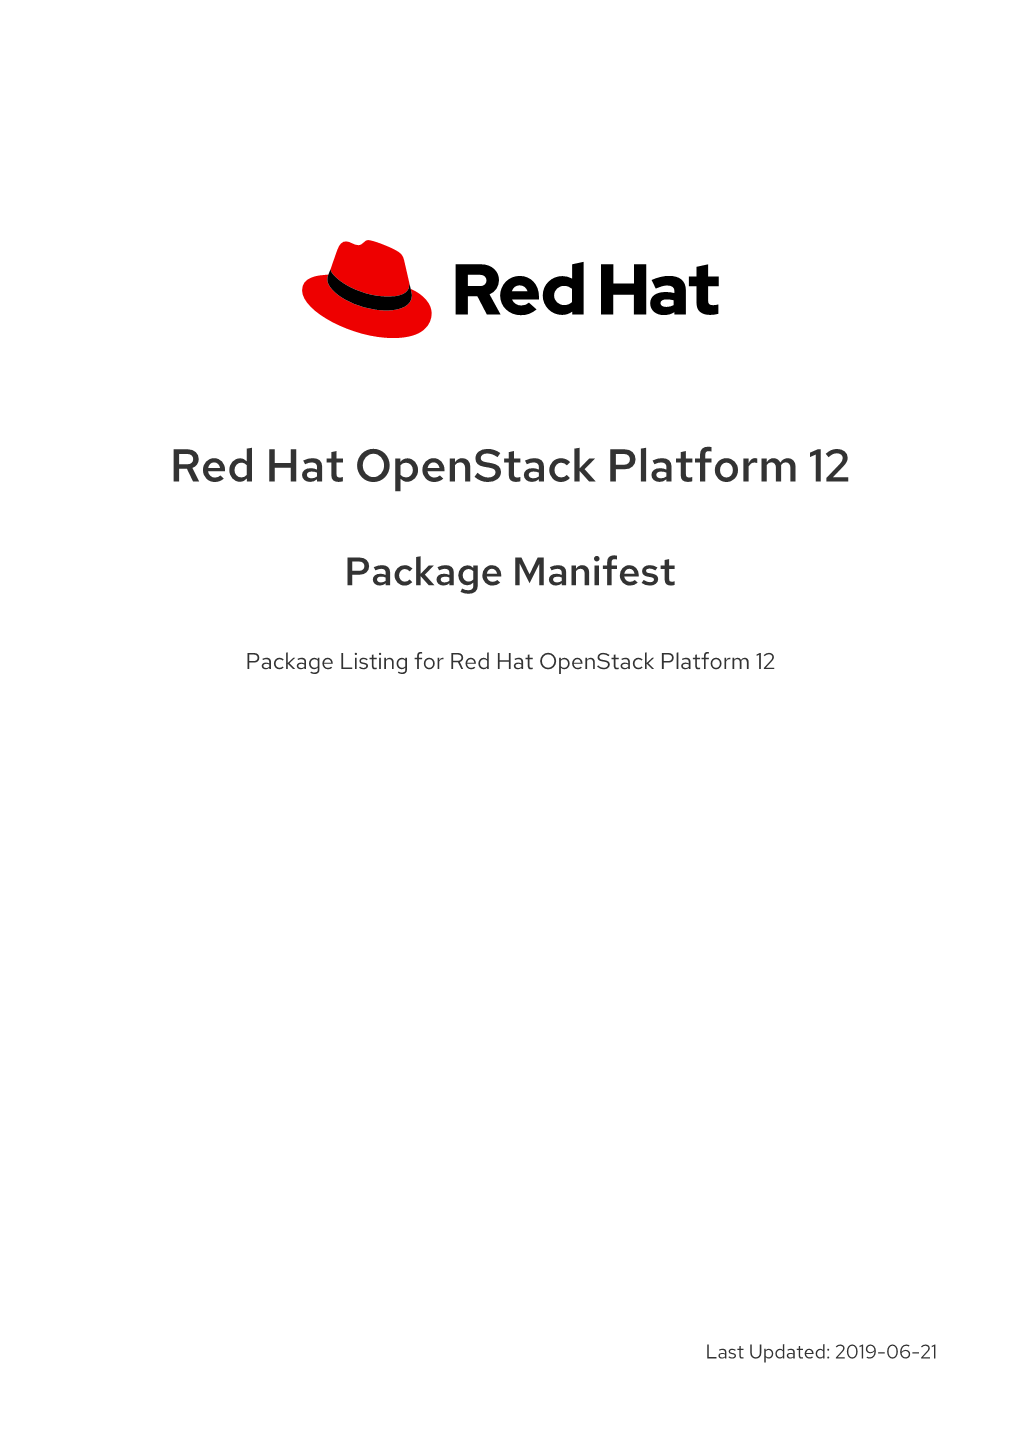 Red Hat Openstack Platform 12 Package Manifest